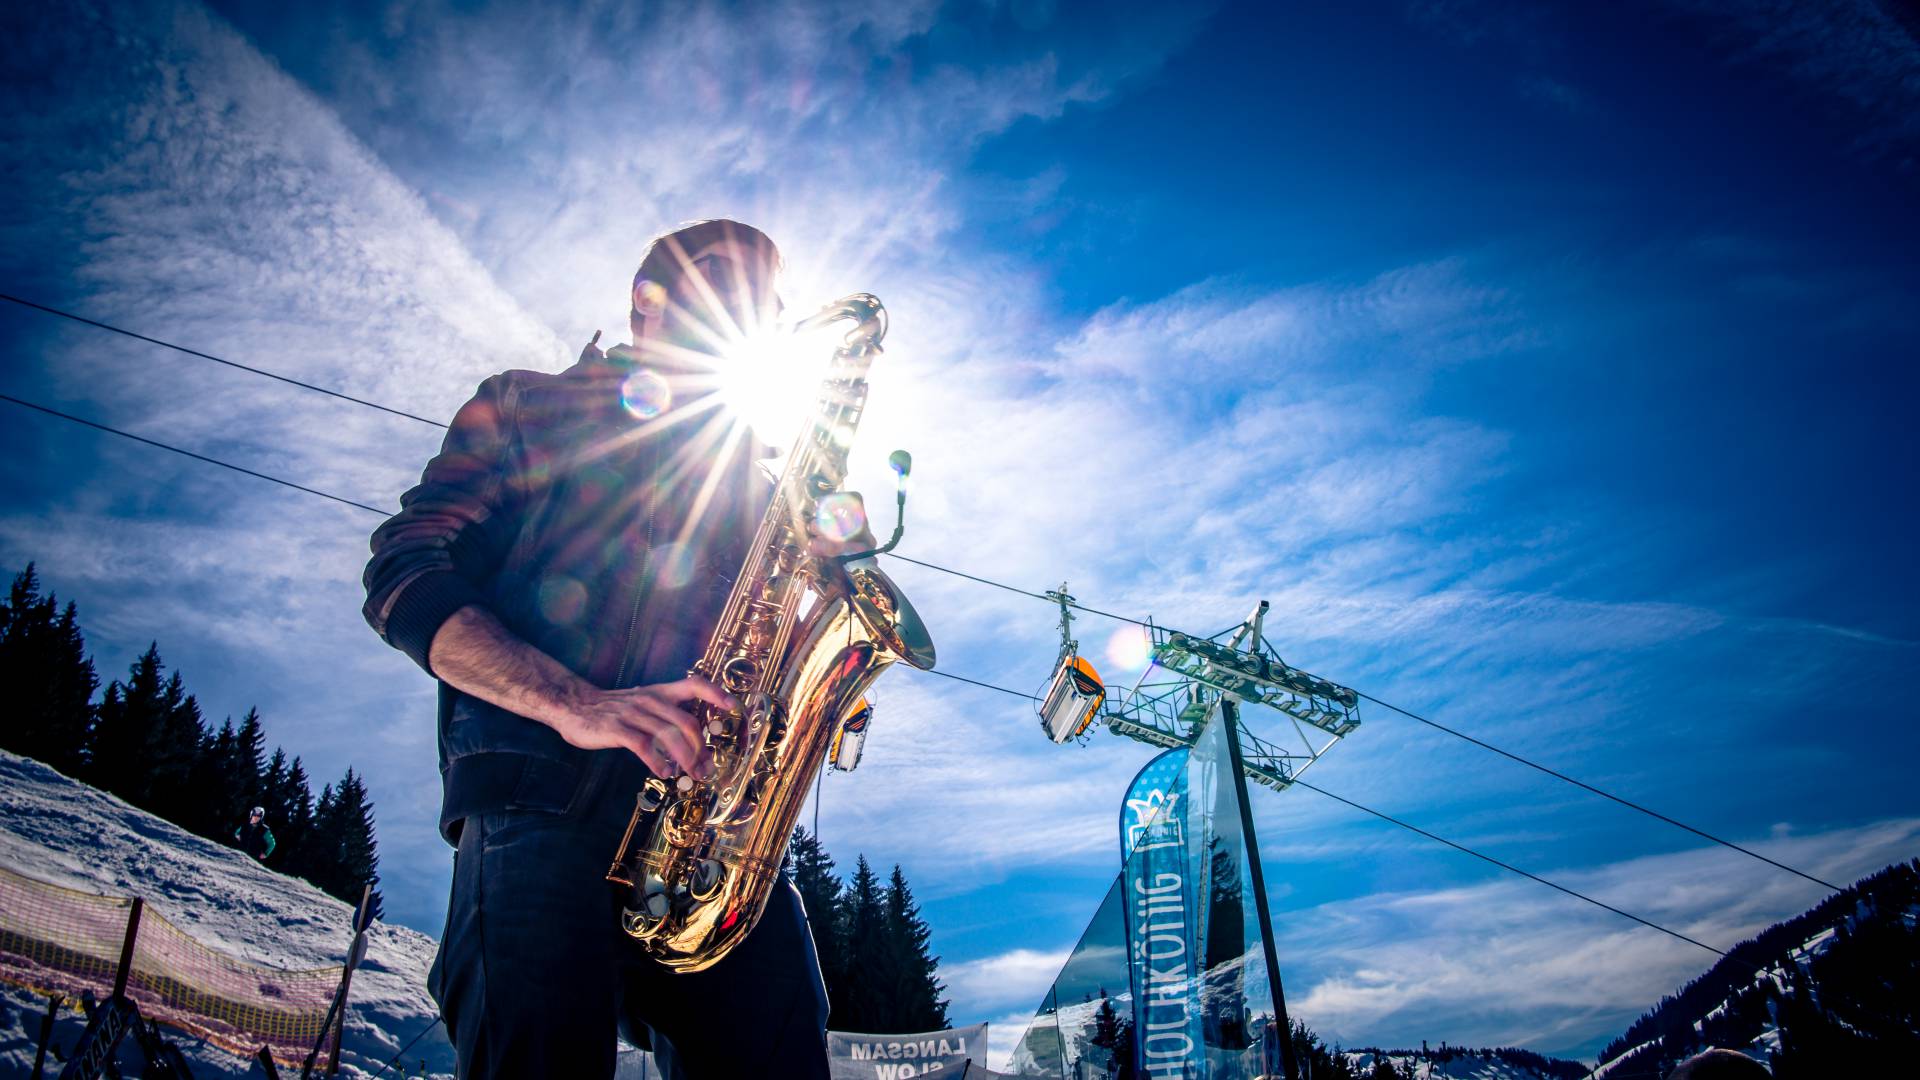 Mann spielt Saxophon bei Sonnenschein 